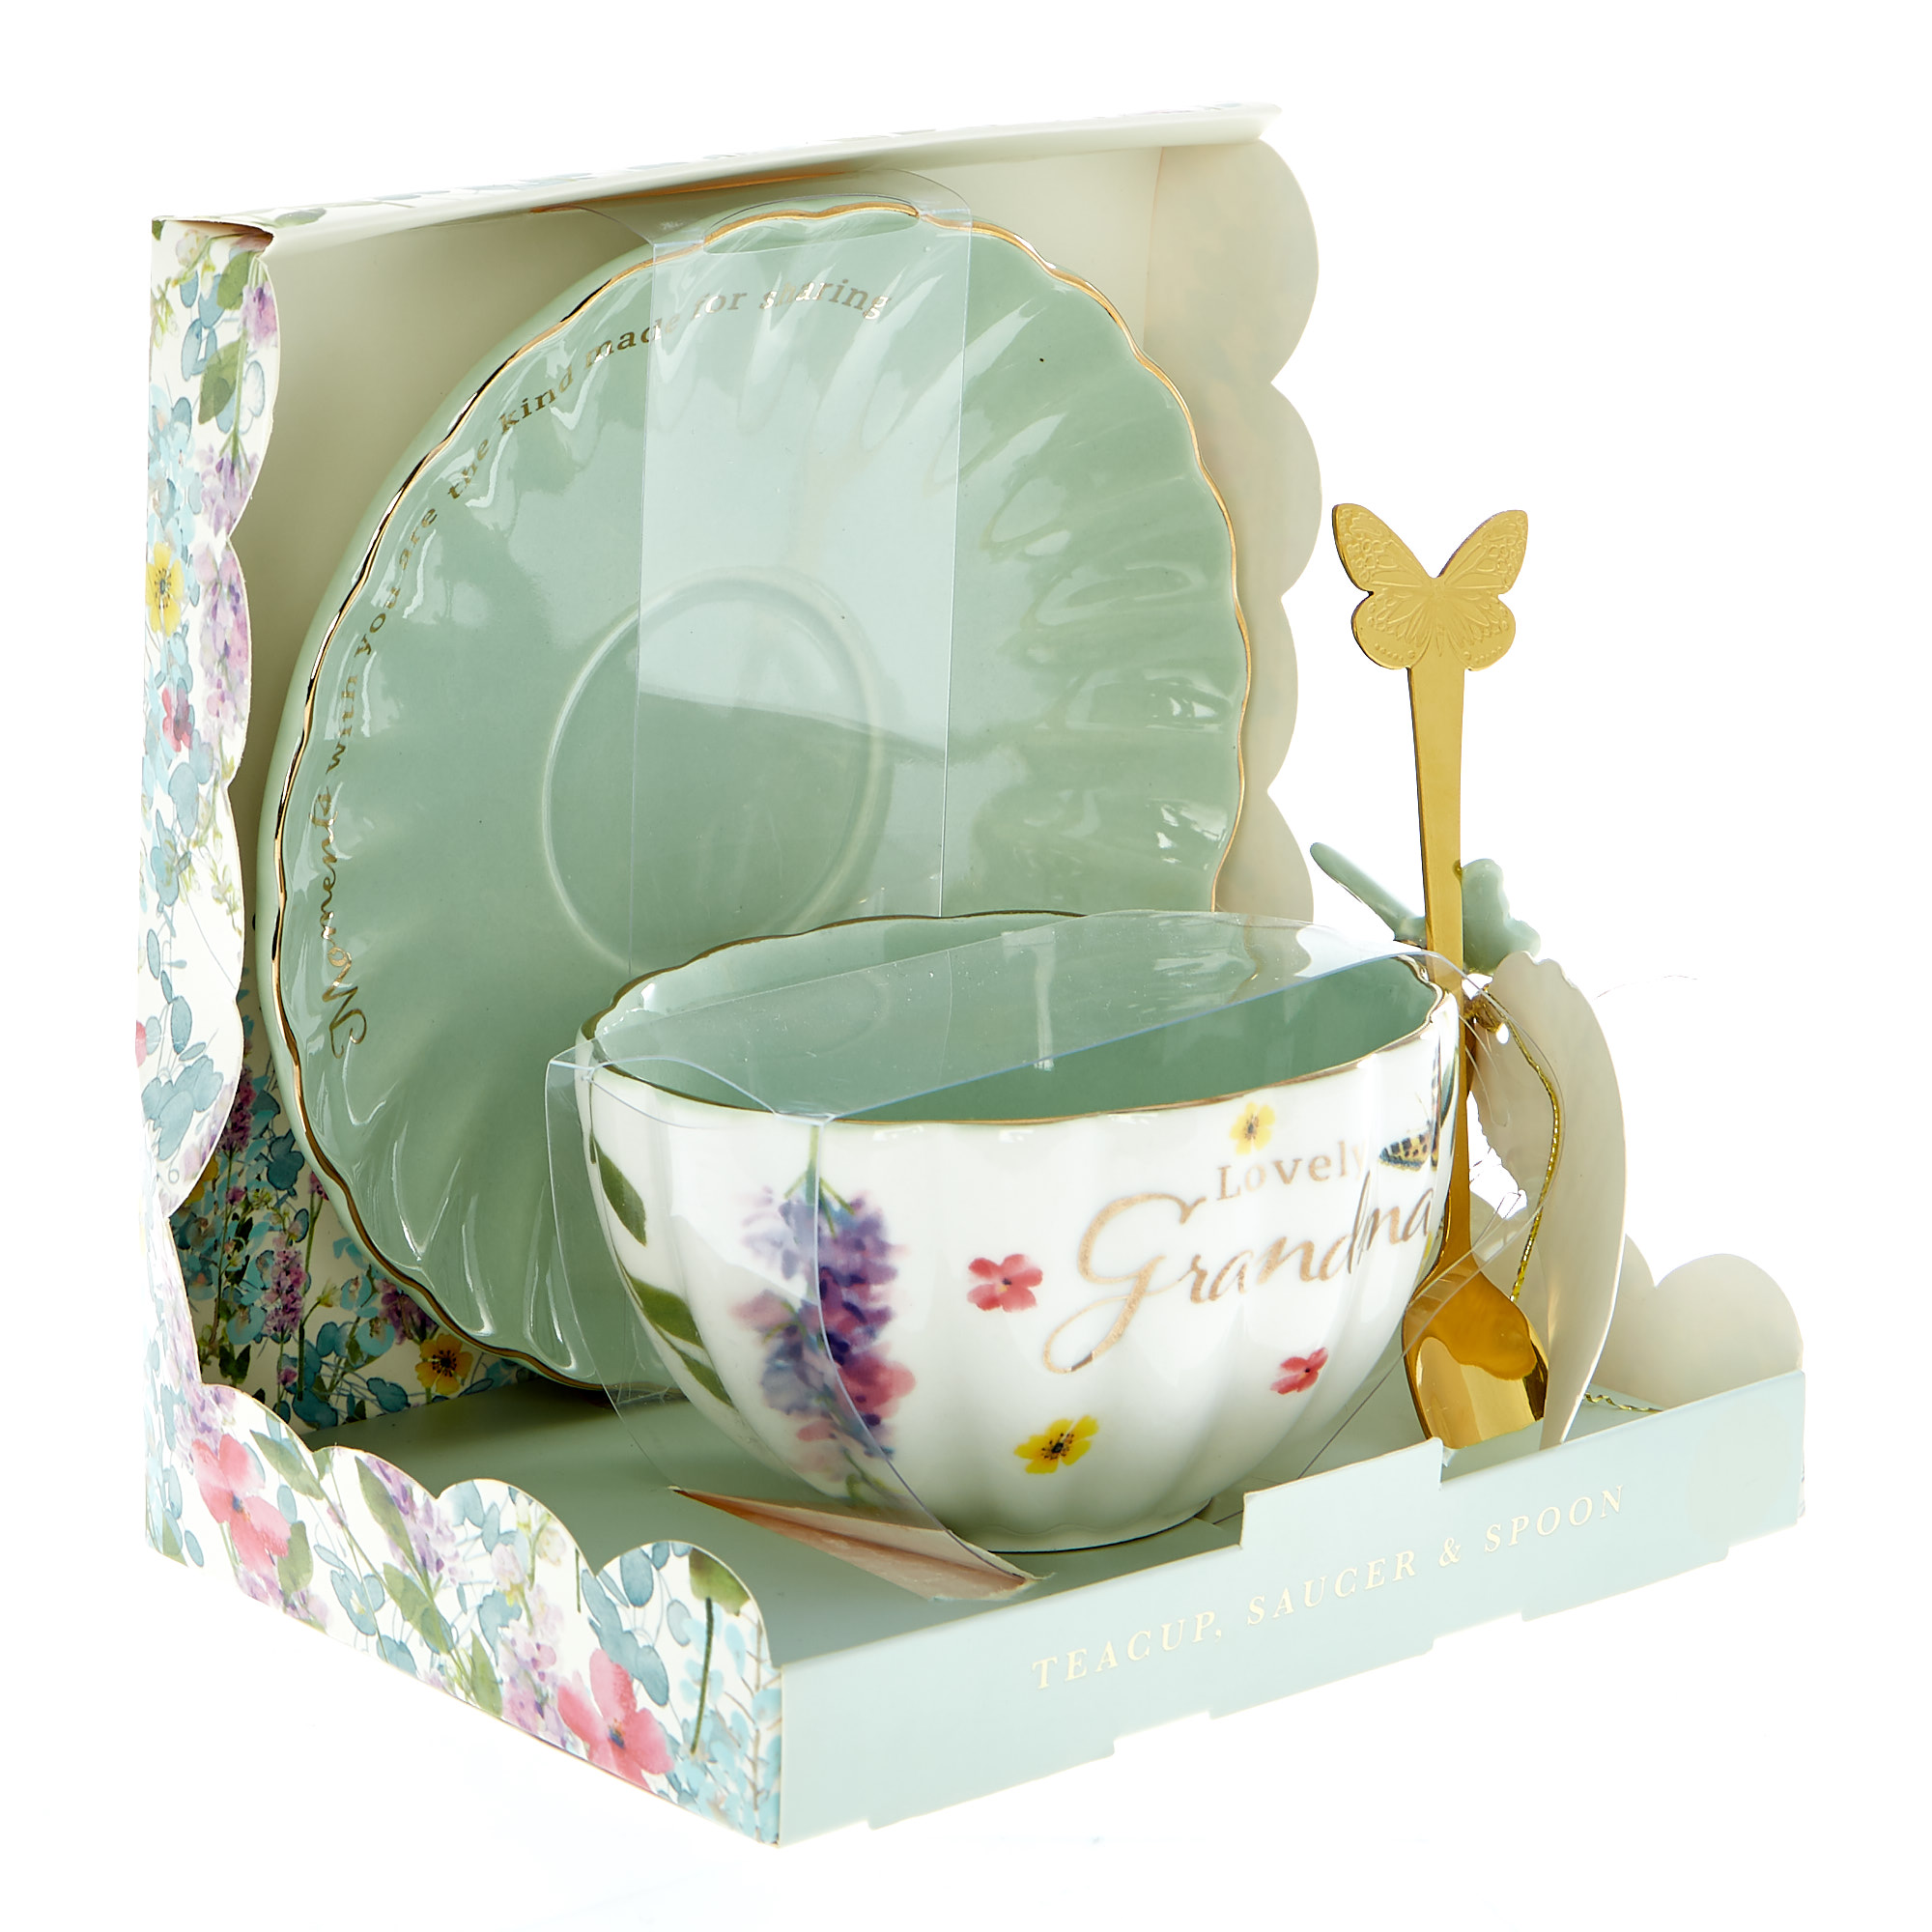 Lovely Grandma Teacup, Saucer & Spoon Set